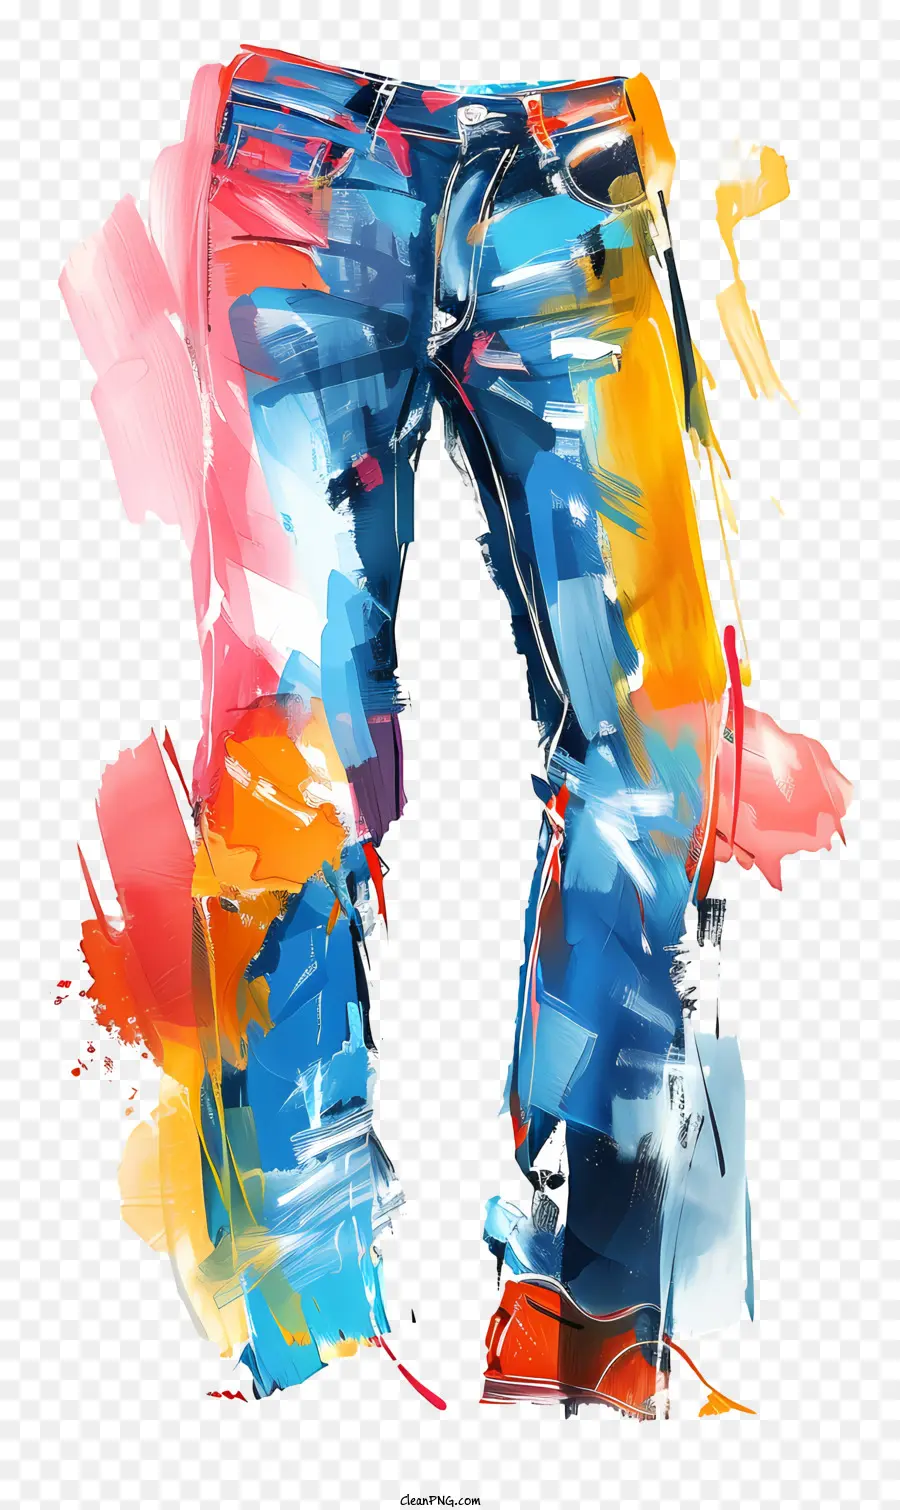 Jeans Aquarell Jeans gestrichene Jeans Delessed Jeans Spritzer Effekt - Mit Aquarell gestrichene Jeans mit verzweifeltem und lebendigem Design